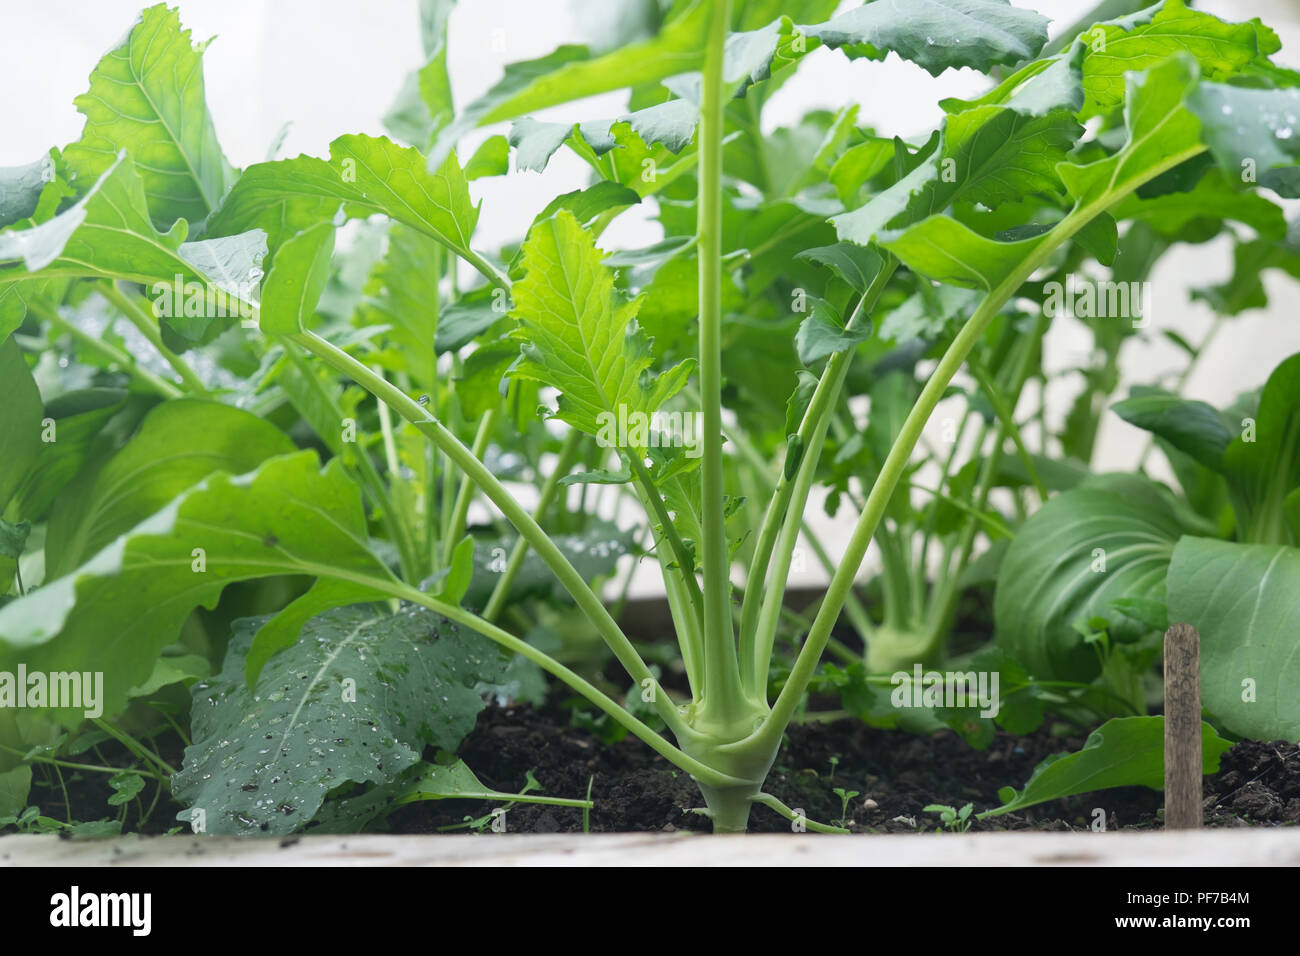 Foglie verdi - Cavoli crescendo in letto giardino - il cavolo rapa e pak choi (cavolo cinese/cavolo cinese) Foto Stock